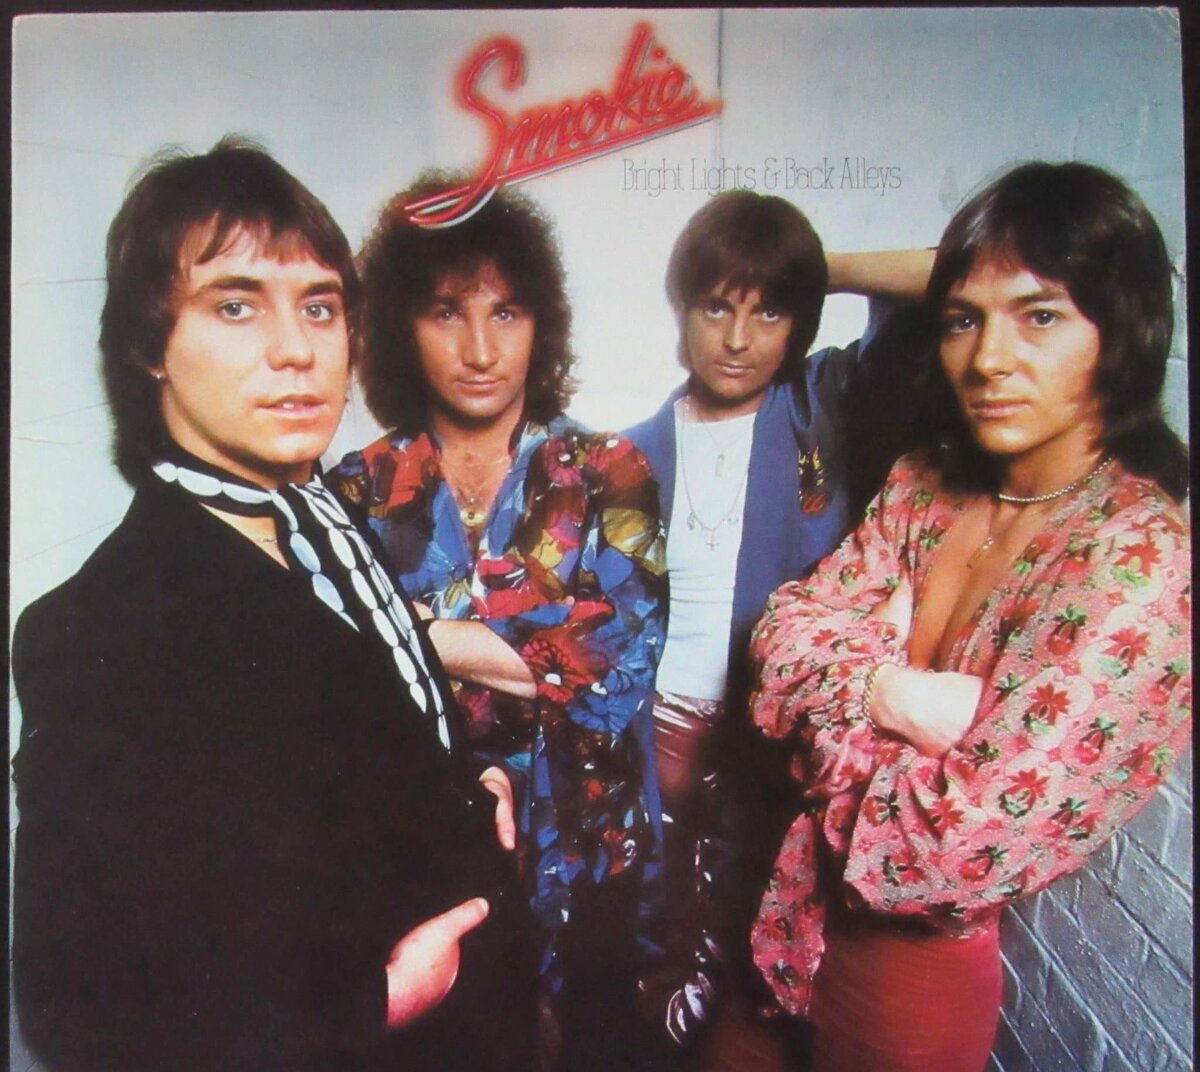 Группа смоки биография. Постеры группы Смоки. Группа Smokie. Постер группы Smokie. Smokie Bright Lights back Alleys 1977.